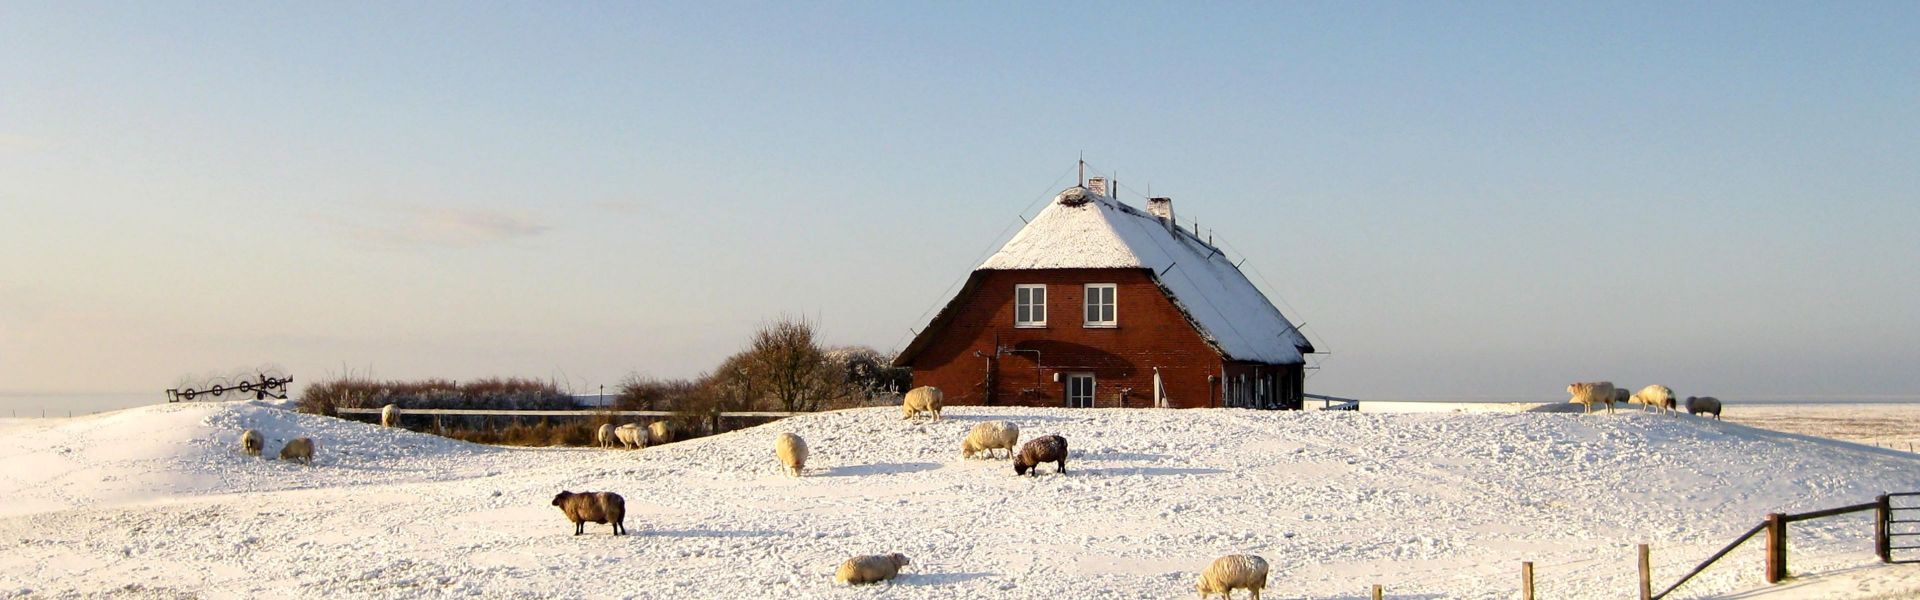 Hallig Gröde im Winter, schneebedeckte Warft, Hallighaus und Schafe im Schnee